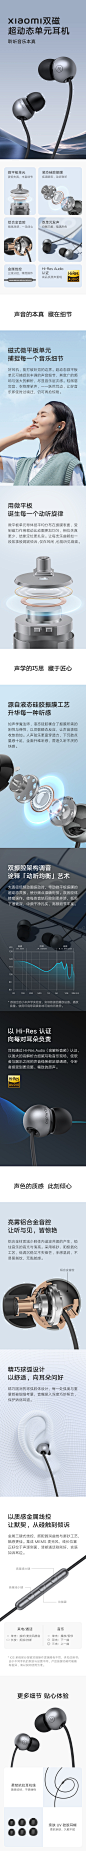 Xiaomi双磁超动态单元耳机 - 一款迭代版的有线耳机。首次采用微平板单元发声。真的很mini，还没有我指甲盖大。5月中最新上架！祝大卖